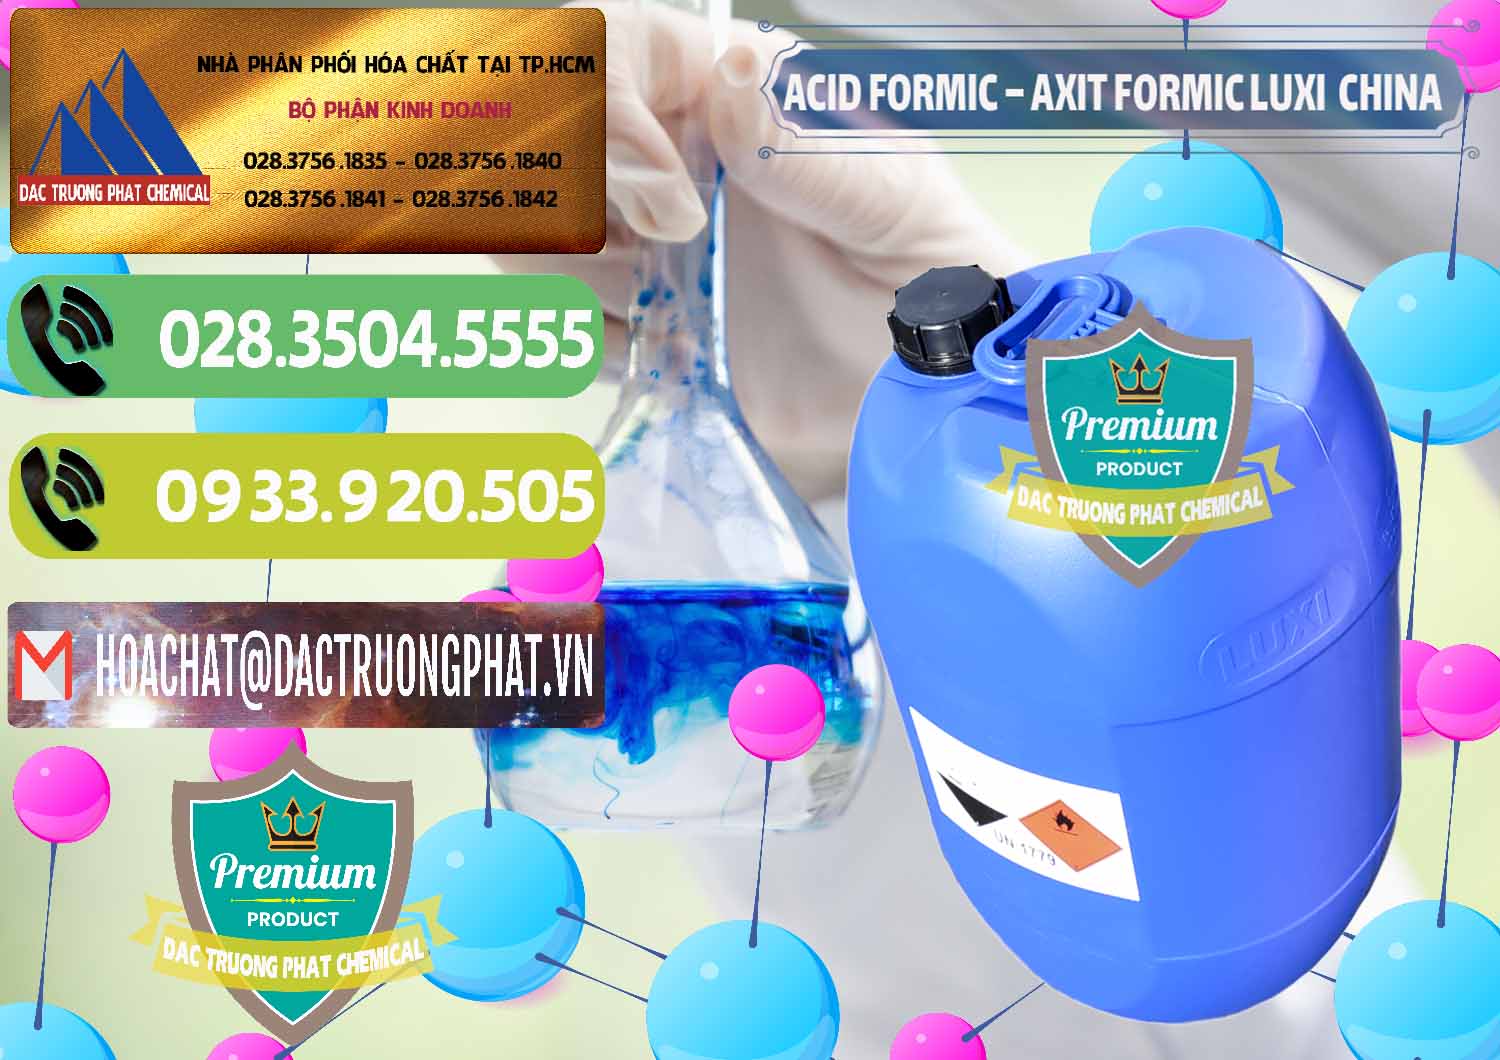 Nơi chuyên bán & phân phối Acid Formic - Axit Formic Luxi Trung Quốc China - 0029 - Công ty chuyên nhập khẩu ( cung cấp ) hóa chất tại TP.HCM - hoachatmientay.vn